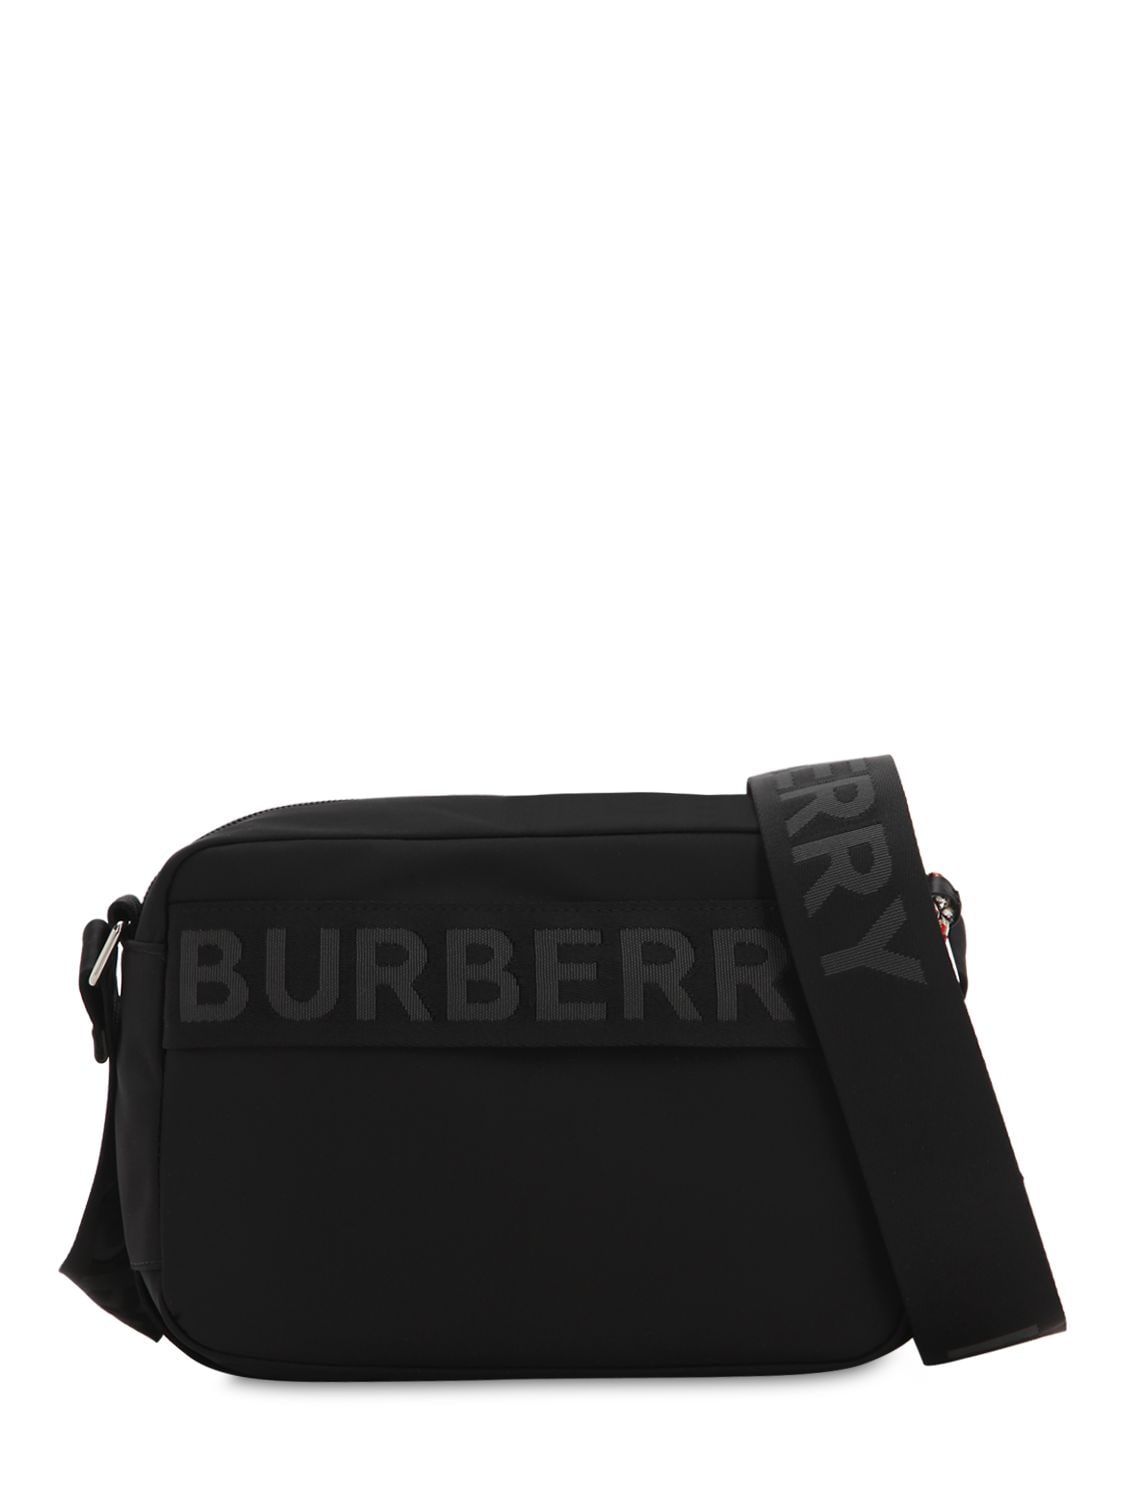 Burberry Paddy Logo Nylon Messenger Bag In Black